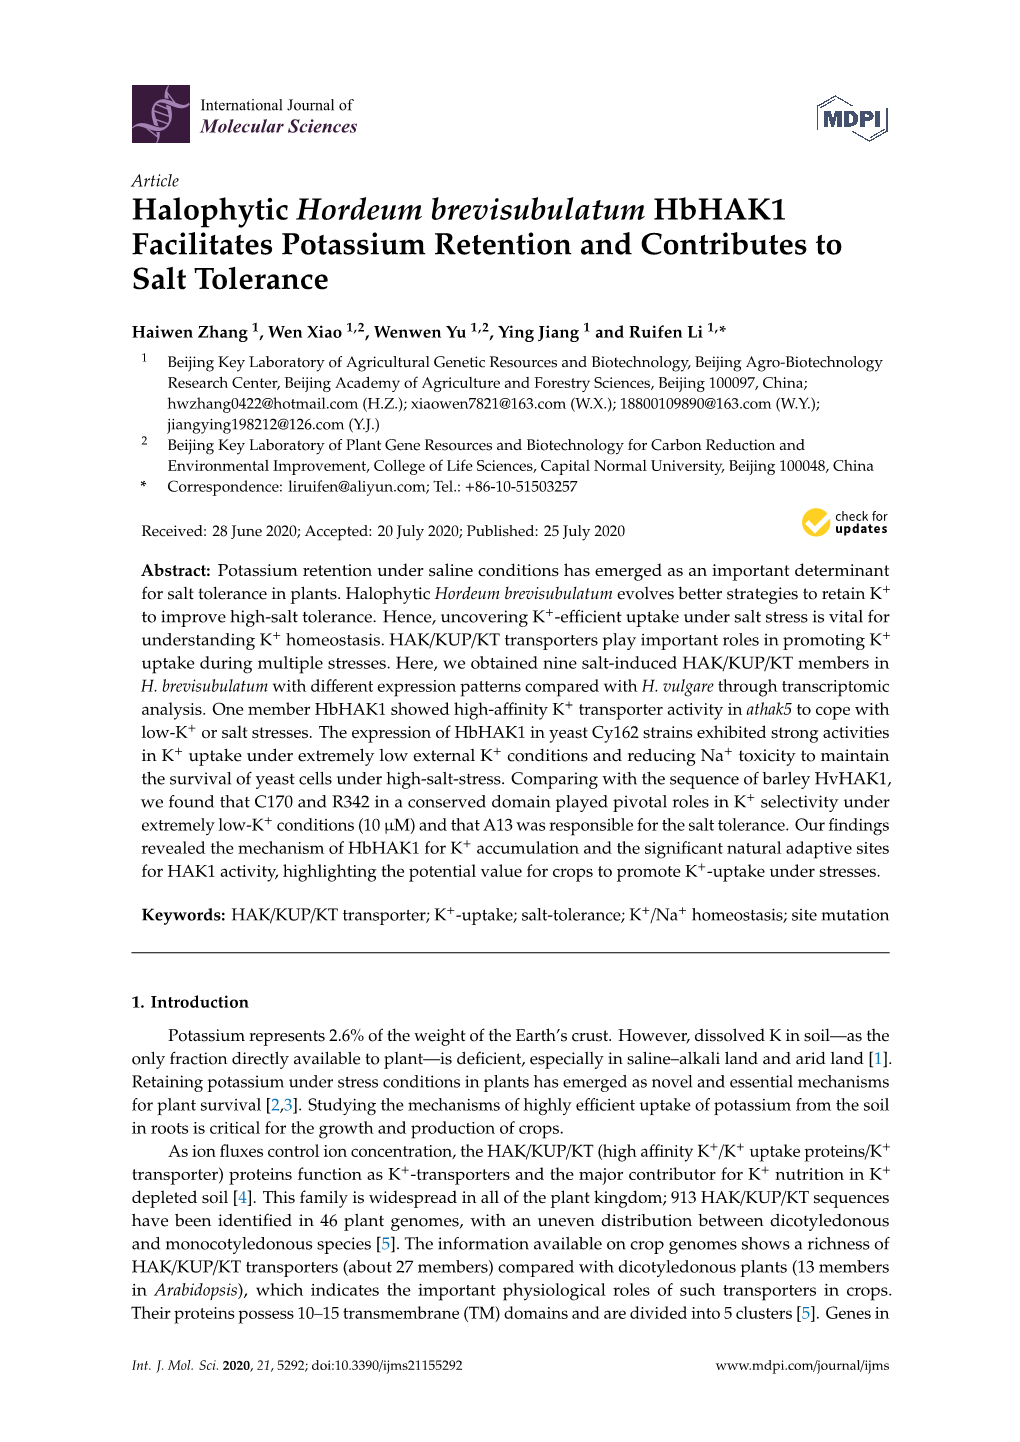 Halophytic Hordeum Brevisubulatum Hbhak1 Facilitates Potassium Retention and Contributes to Salt Tolerance